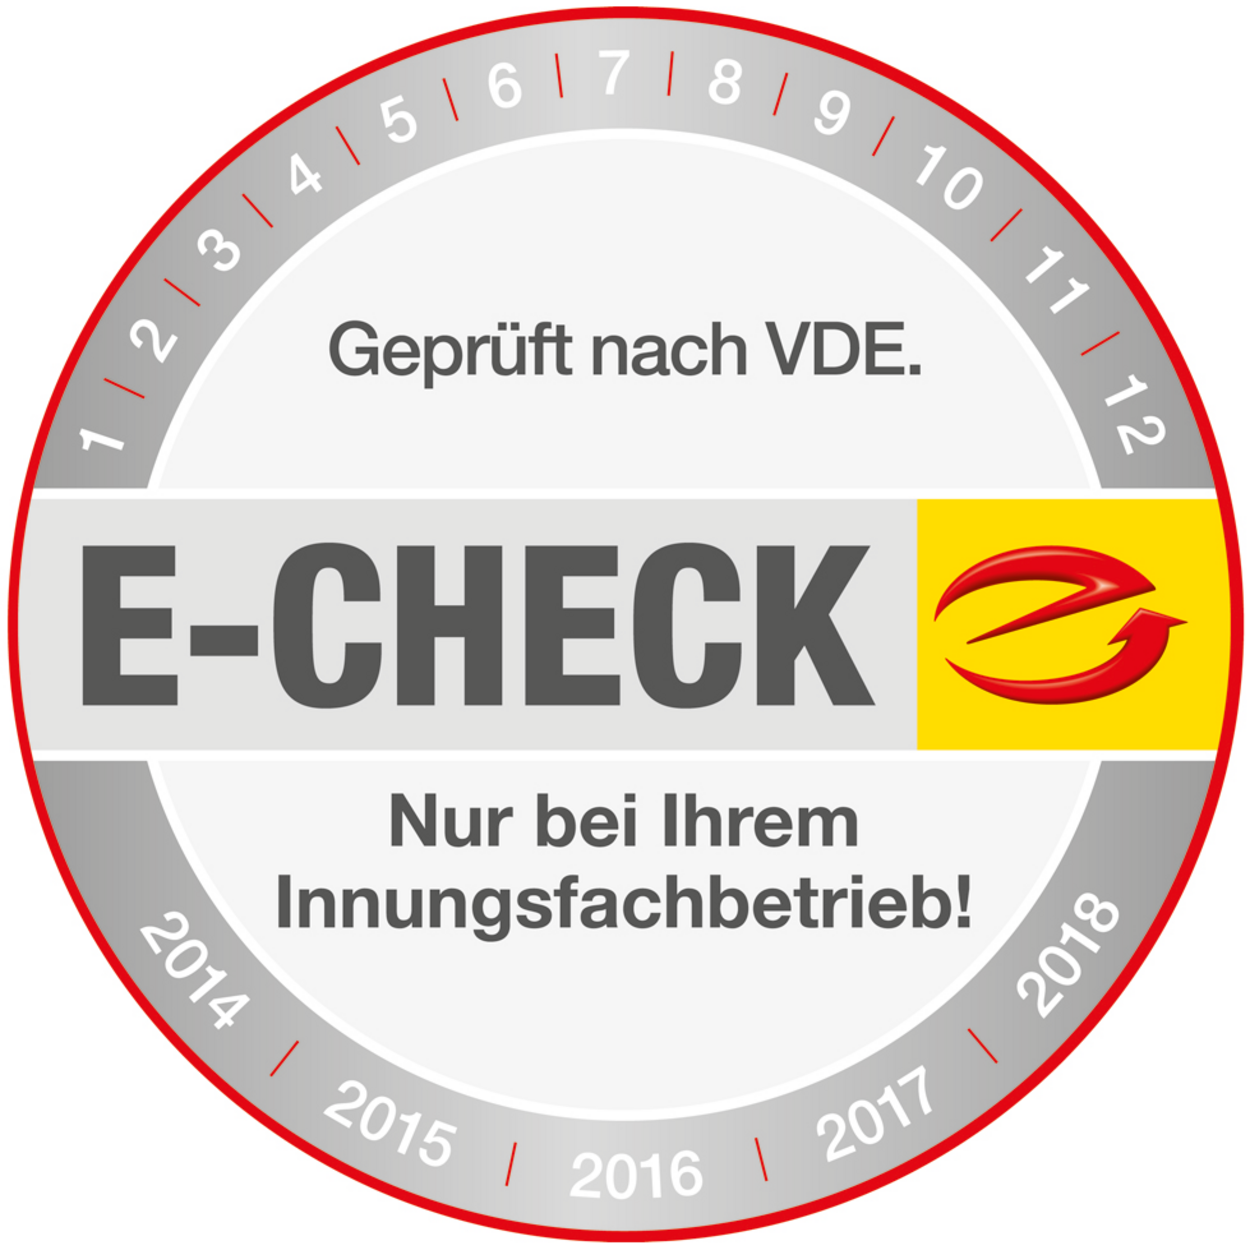 Der E-Check bei Frank Gehlhaar in Machern